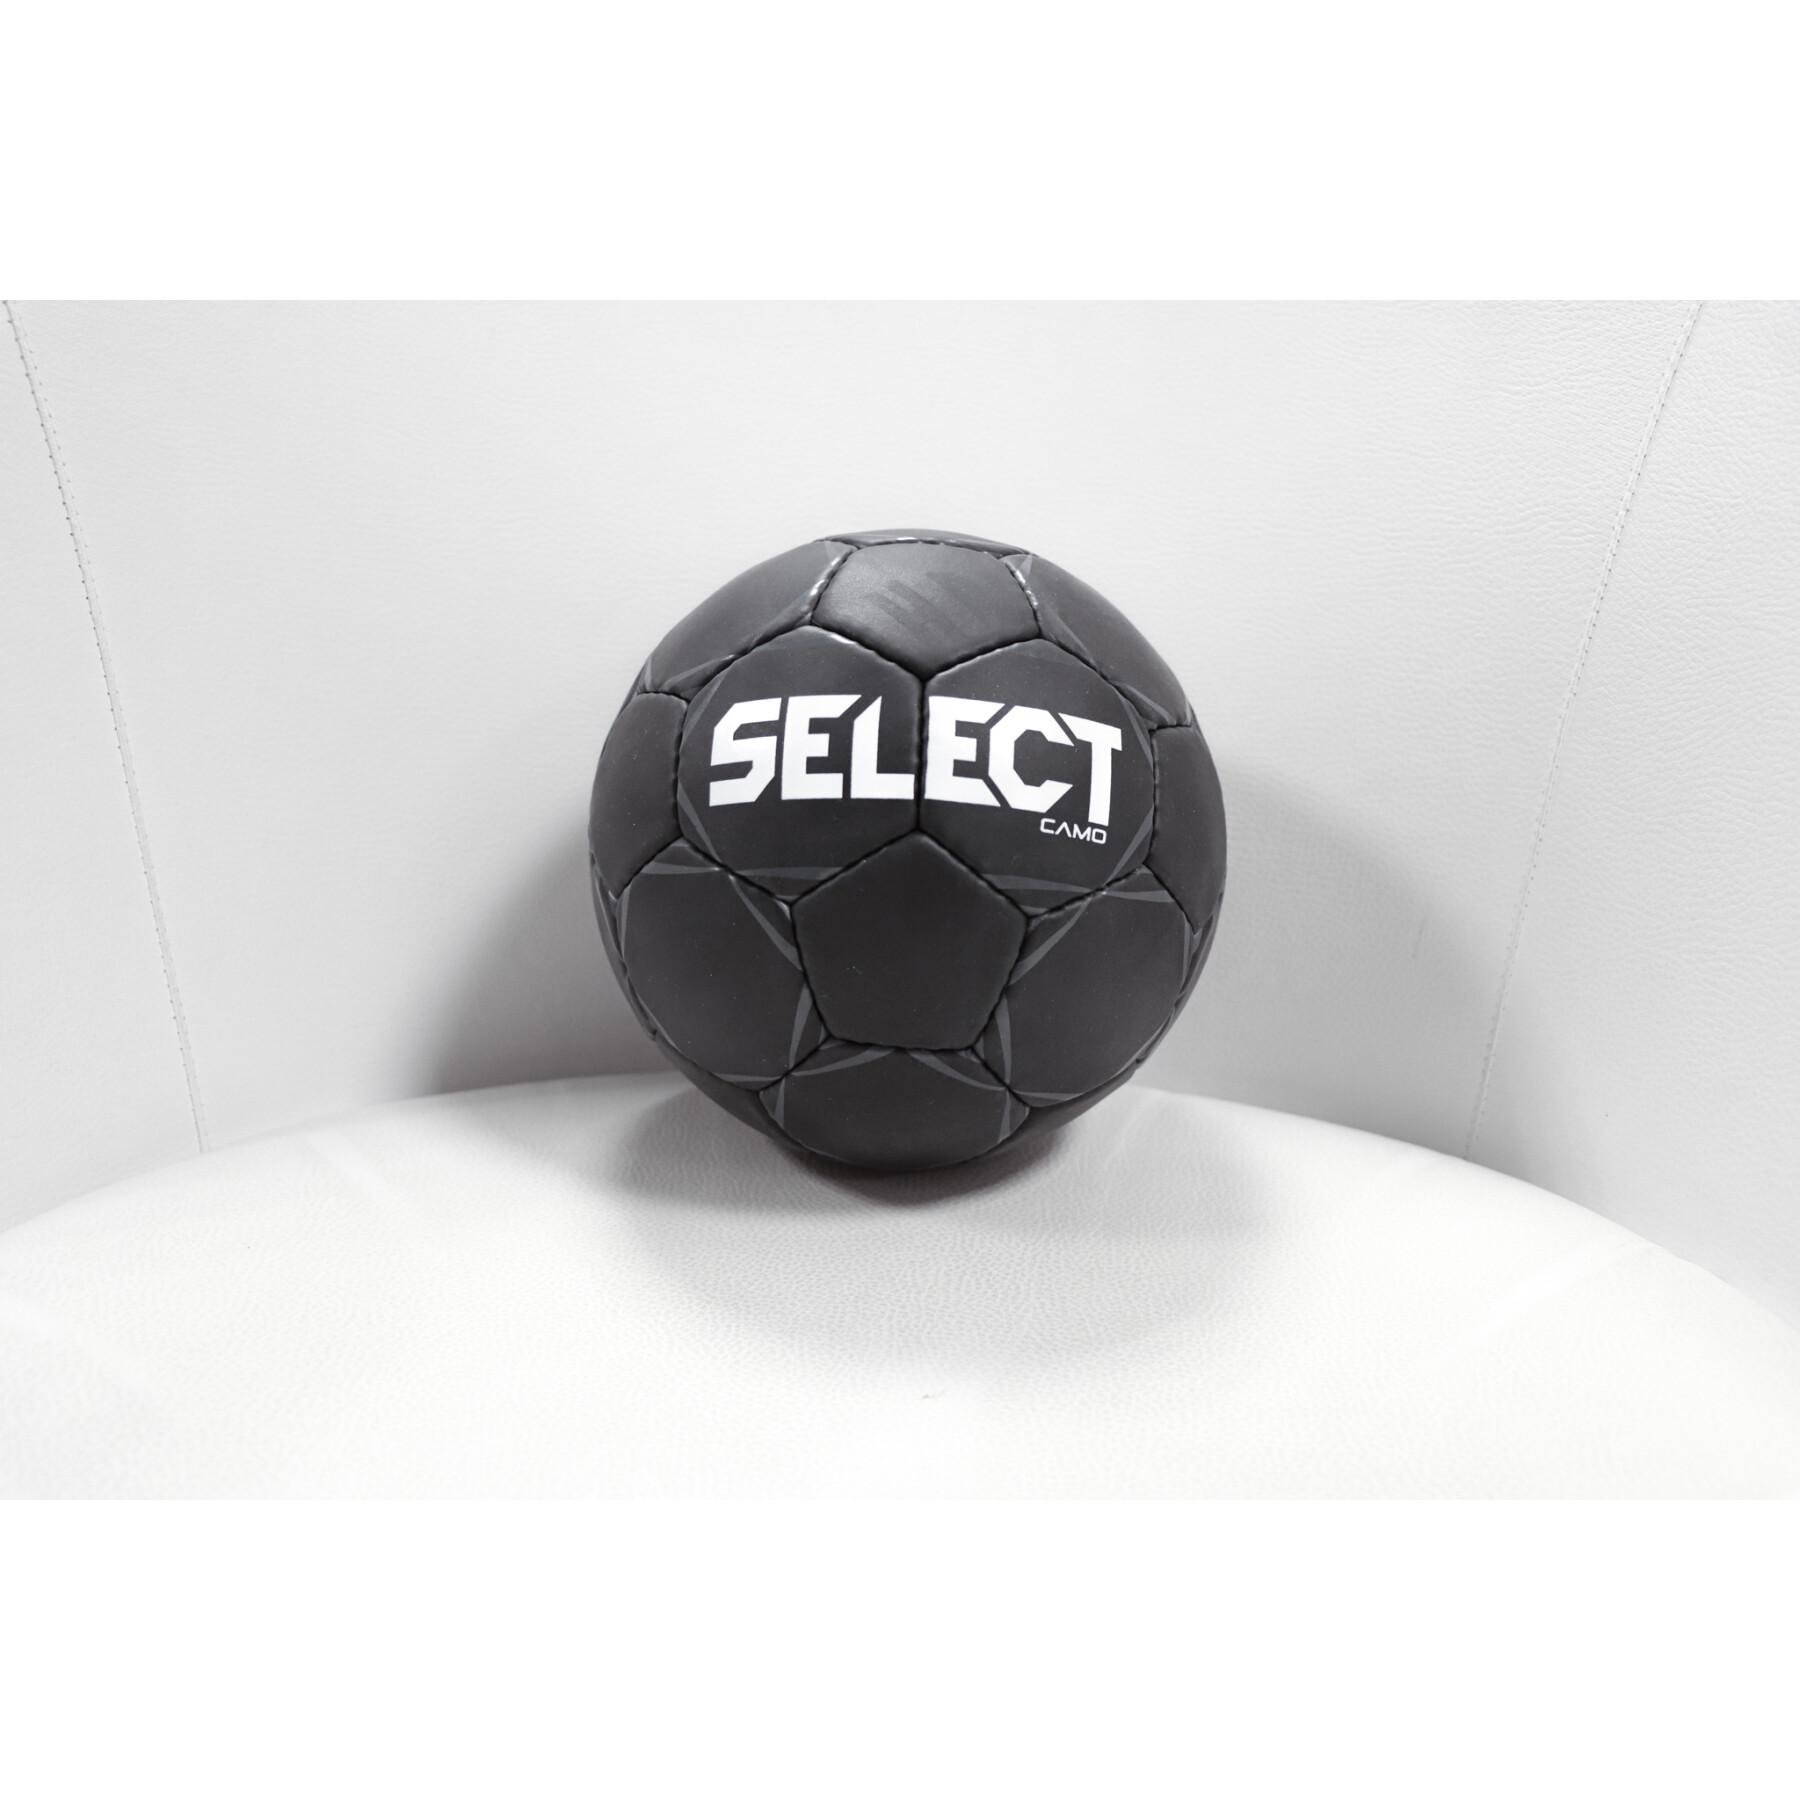 Balon Select Hb Camo